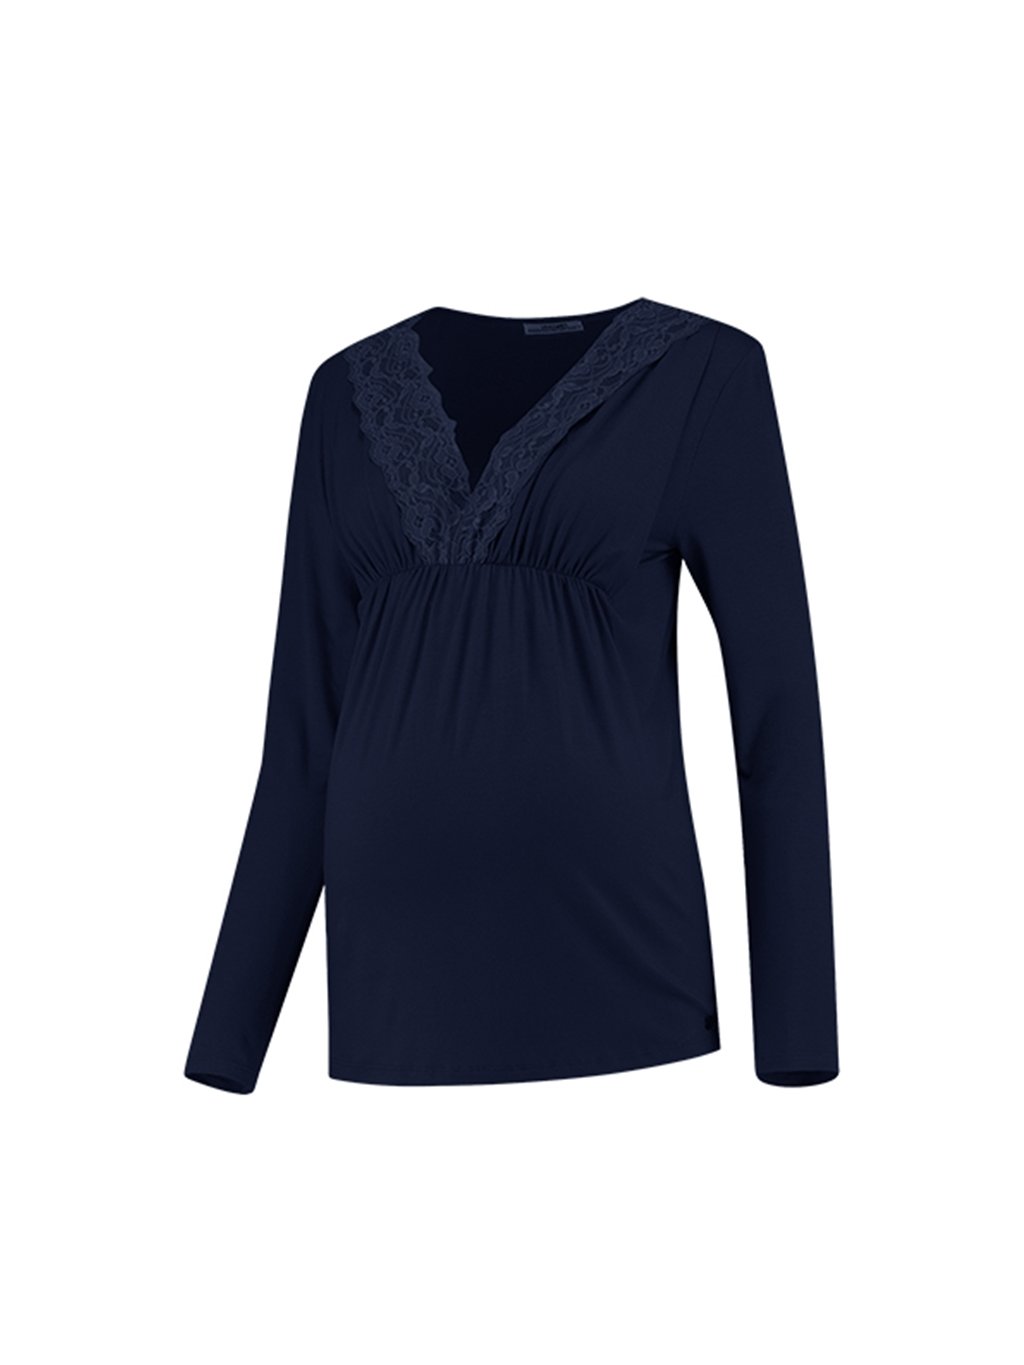 Těhotenské a kojící tričko 3v1 Lace Tencel modré s krajkou (Velikost XL)